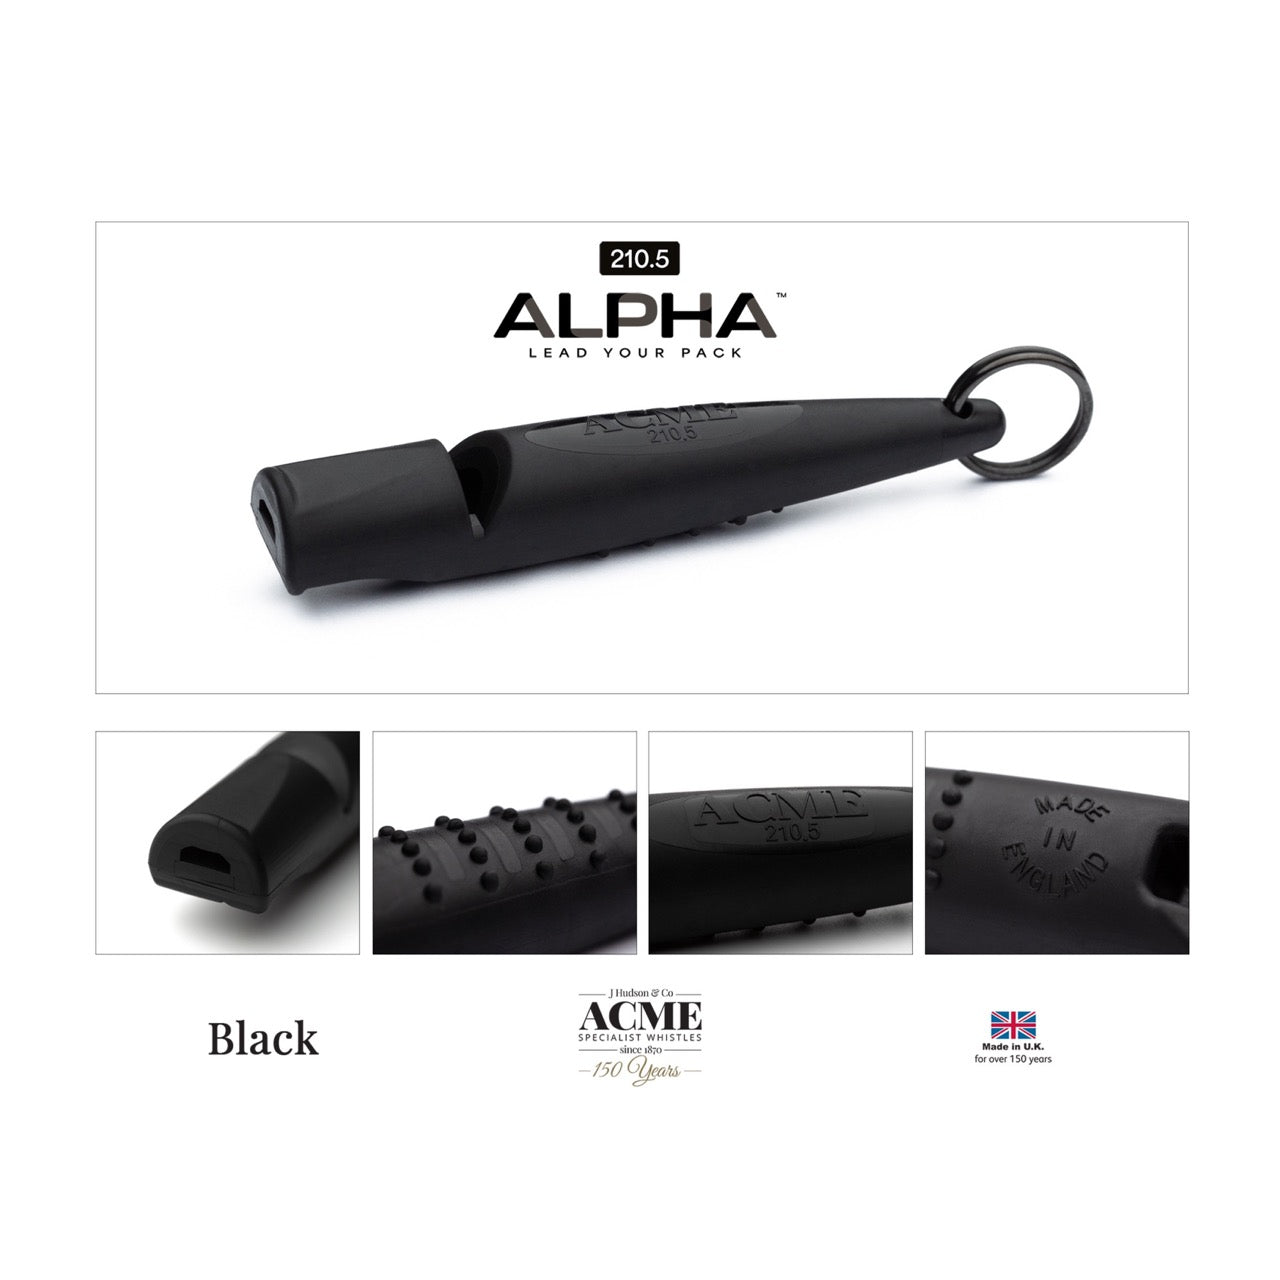 Acme Alpha beste hondenfluit toonhoogte 210.5 zwart